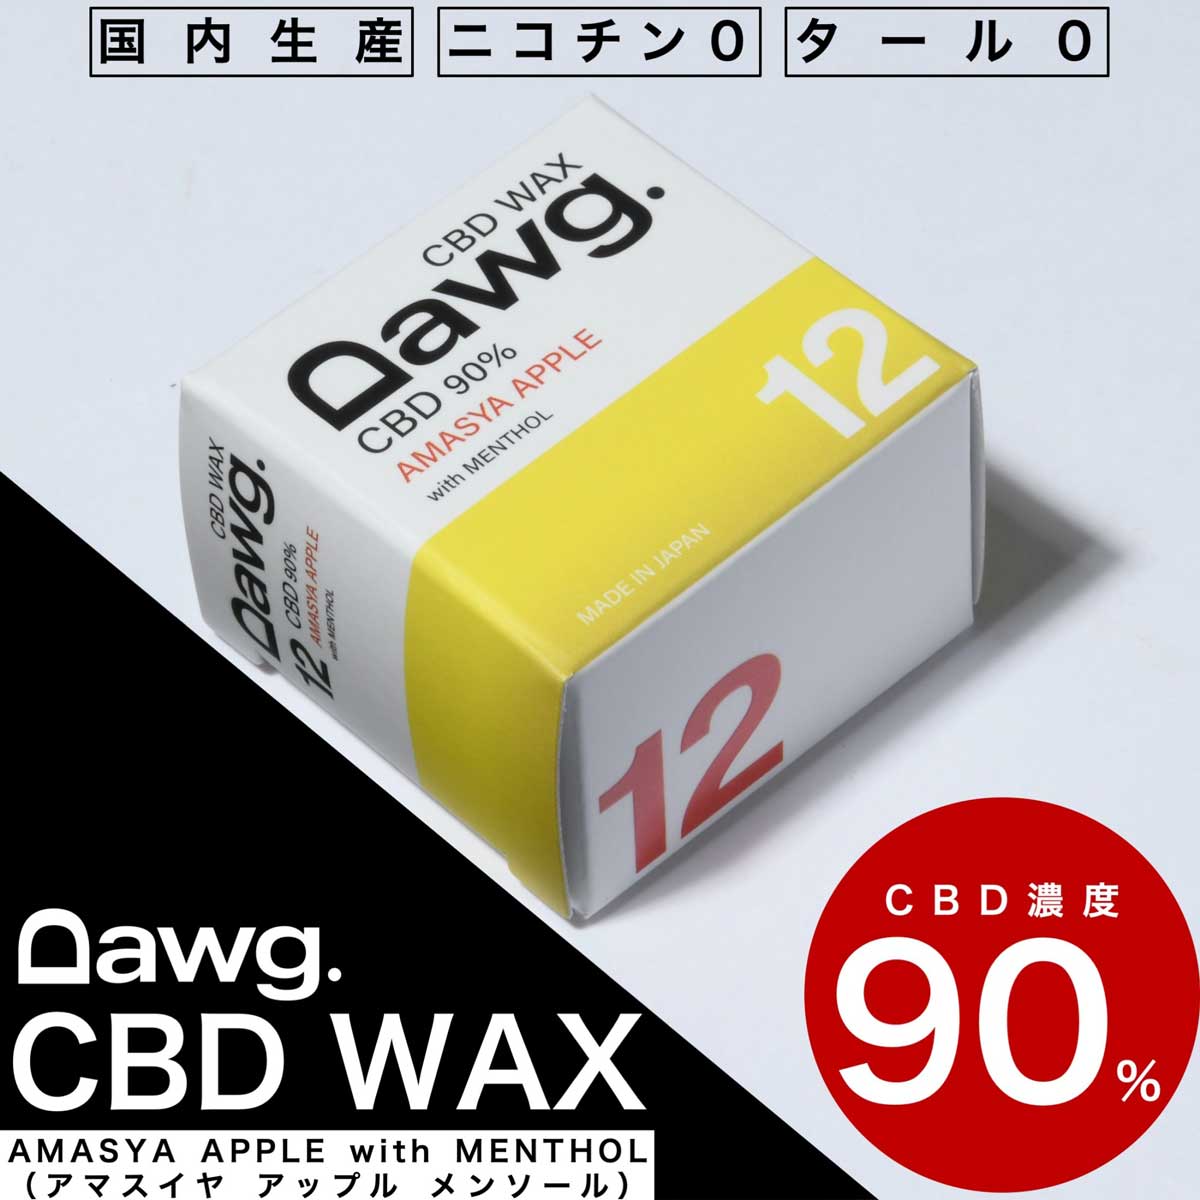 ワックス単品 Dawg. CBD WAX 900mg 単品 電子タバコ ペンタイプ ワックス リキッド 高濃度 90% ニコチン0 安全 日本製 ヘンプ 植物由来 カンナビノイド シービーディー 7フレーバー 持ち運び リフレッシュ